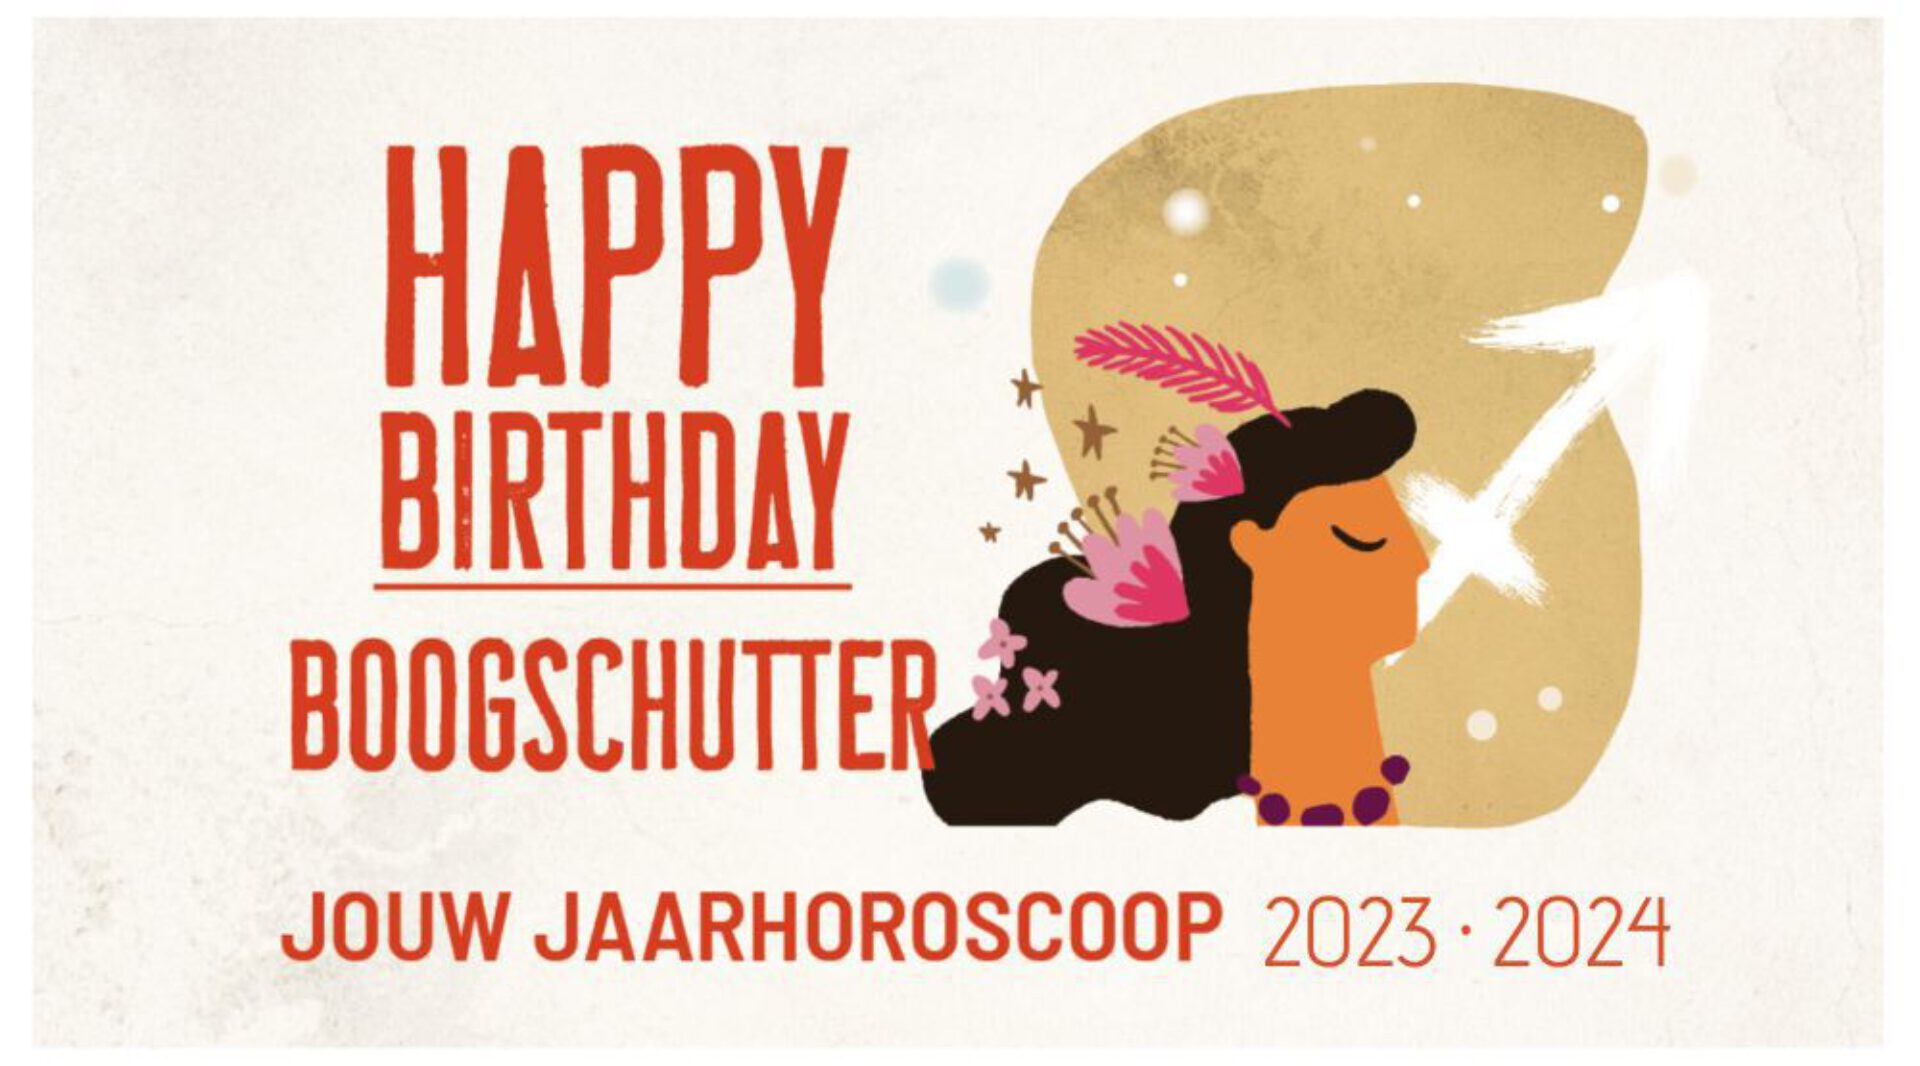 Boogschutter, jouw jaarhoroscoop 2023-2024: gelukkige verjaardag!